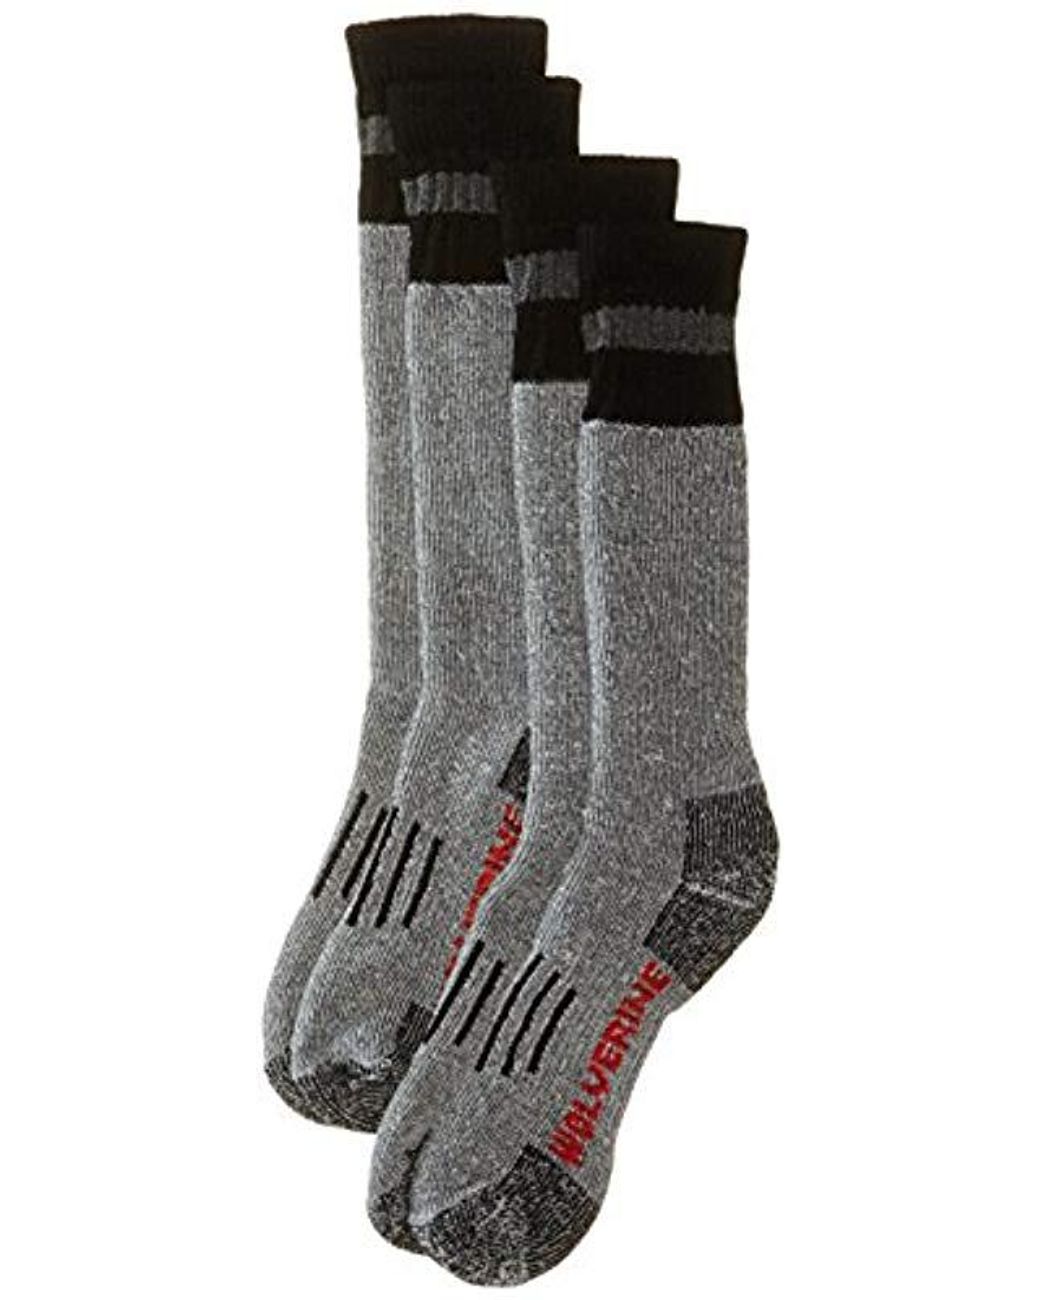 Wolverine Women's Camo Merino Wool Boot Socks 2 pair 